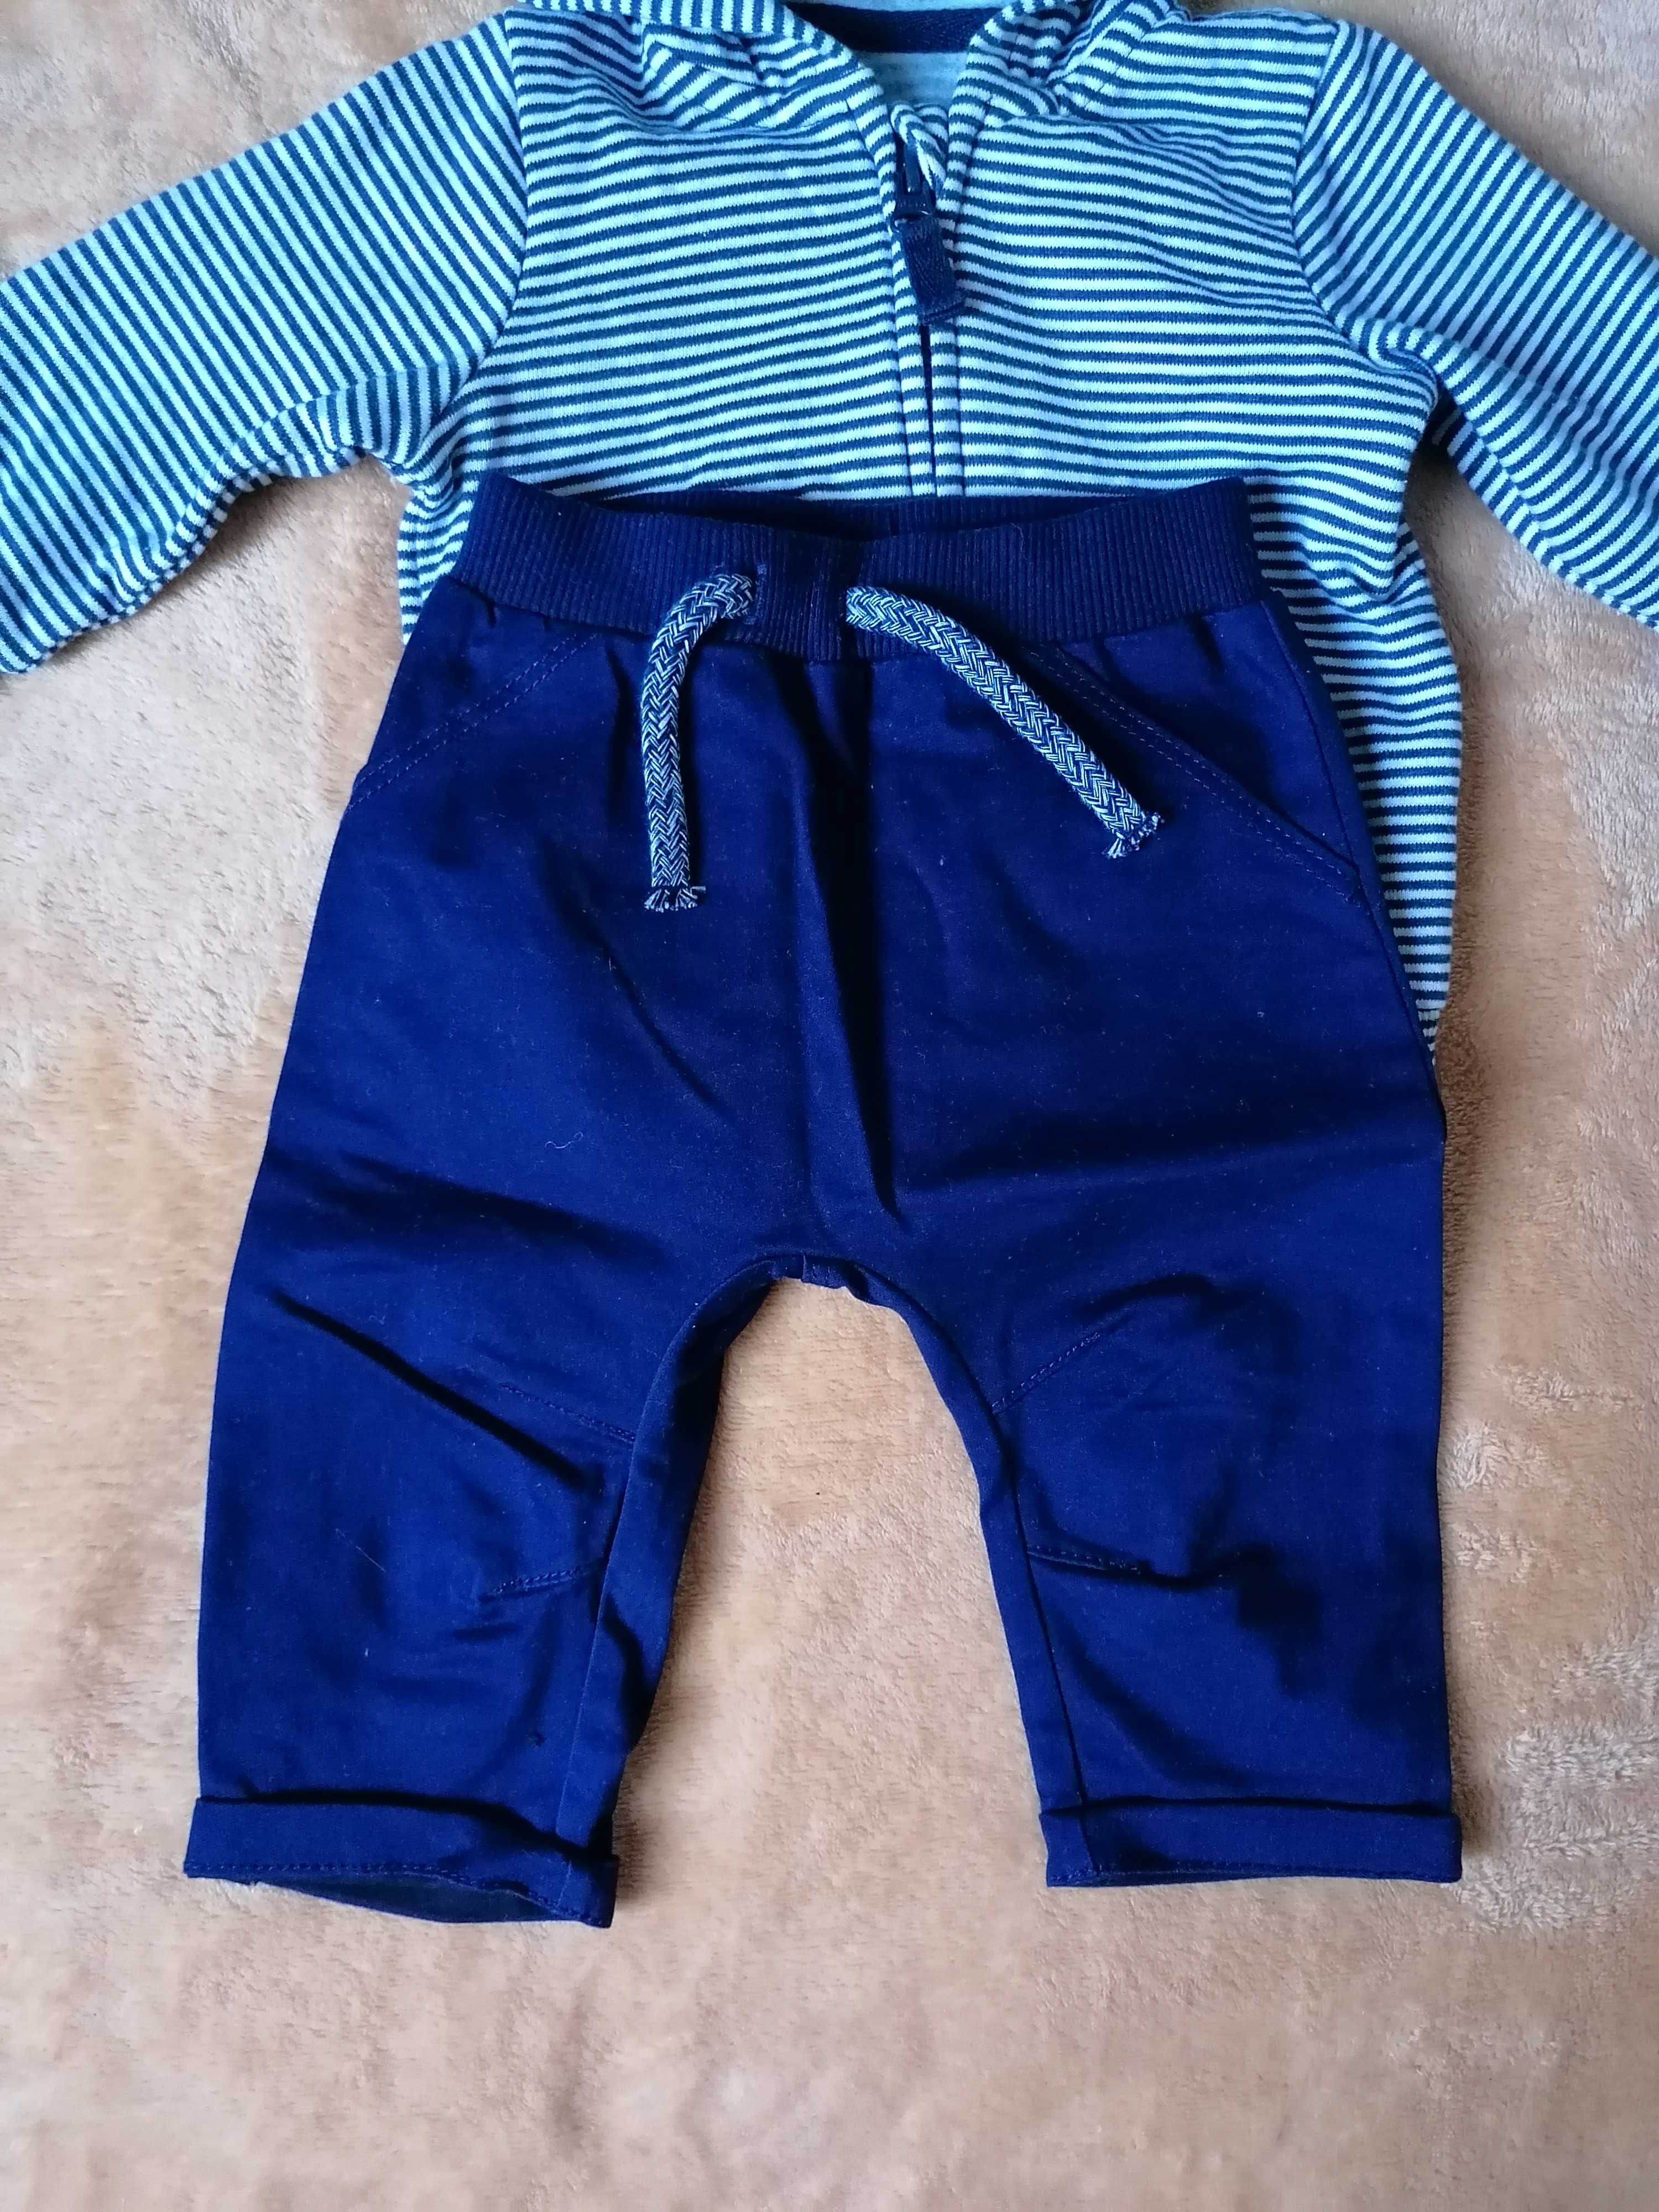 Komplet dla chłopca 62/68 bluza spodnie 3-6 miesięcy kaptur z uszkami